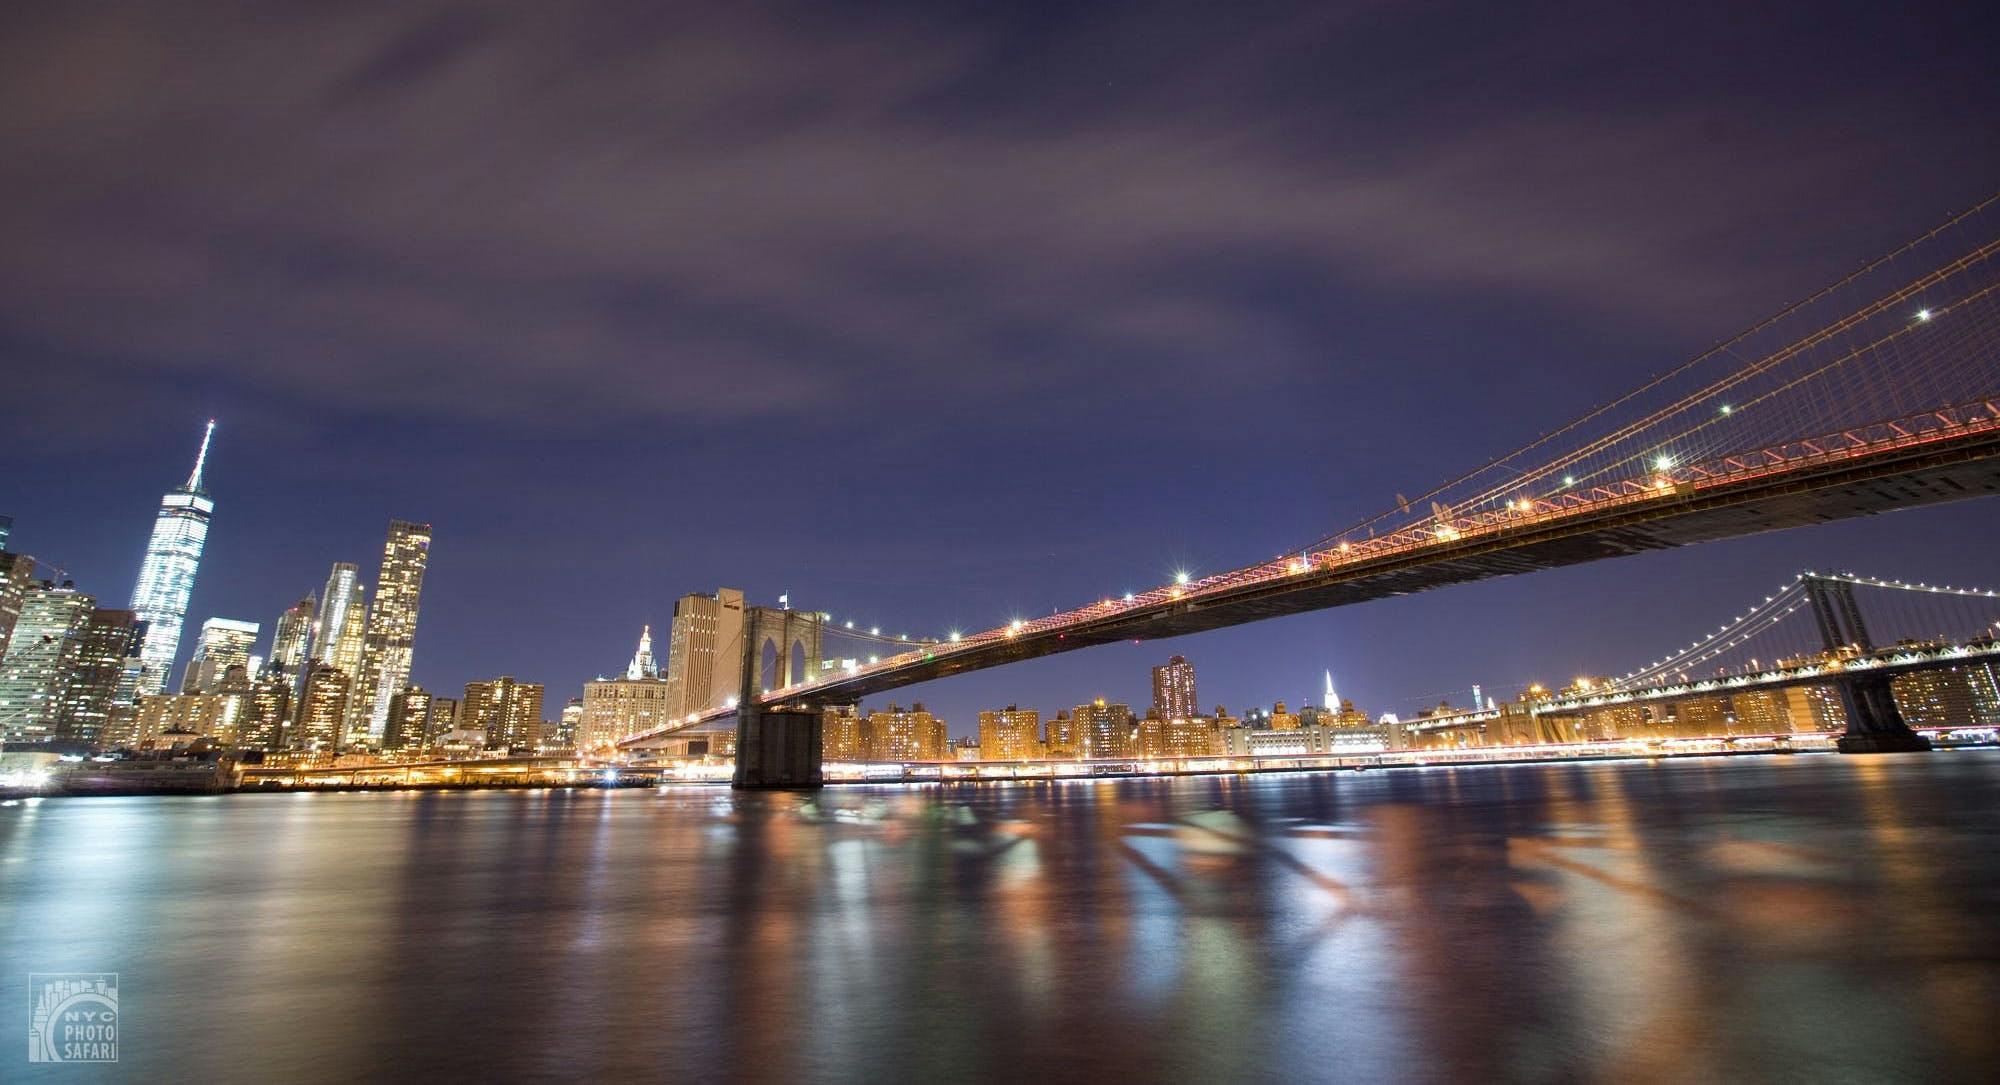 Visite photographique nocturne du pont de Brooklyn